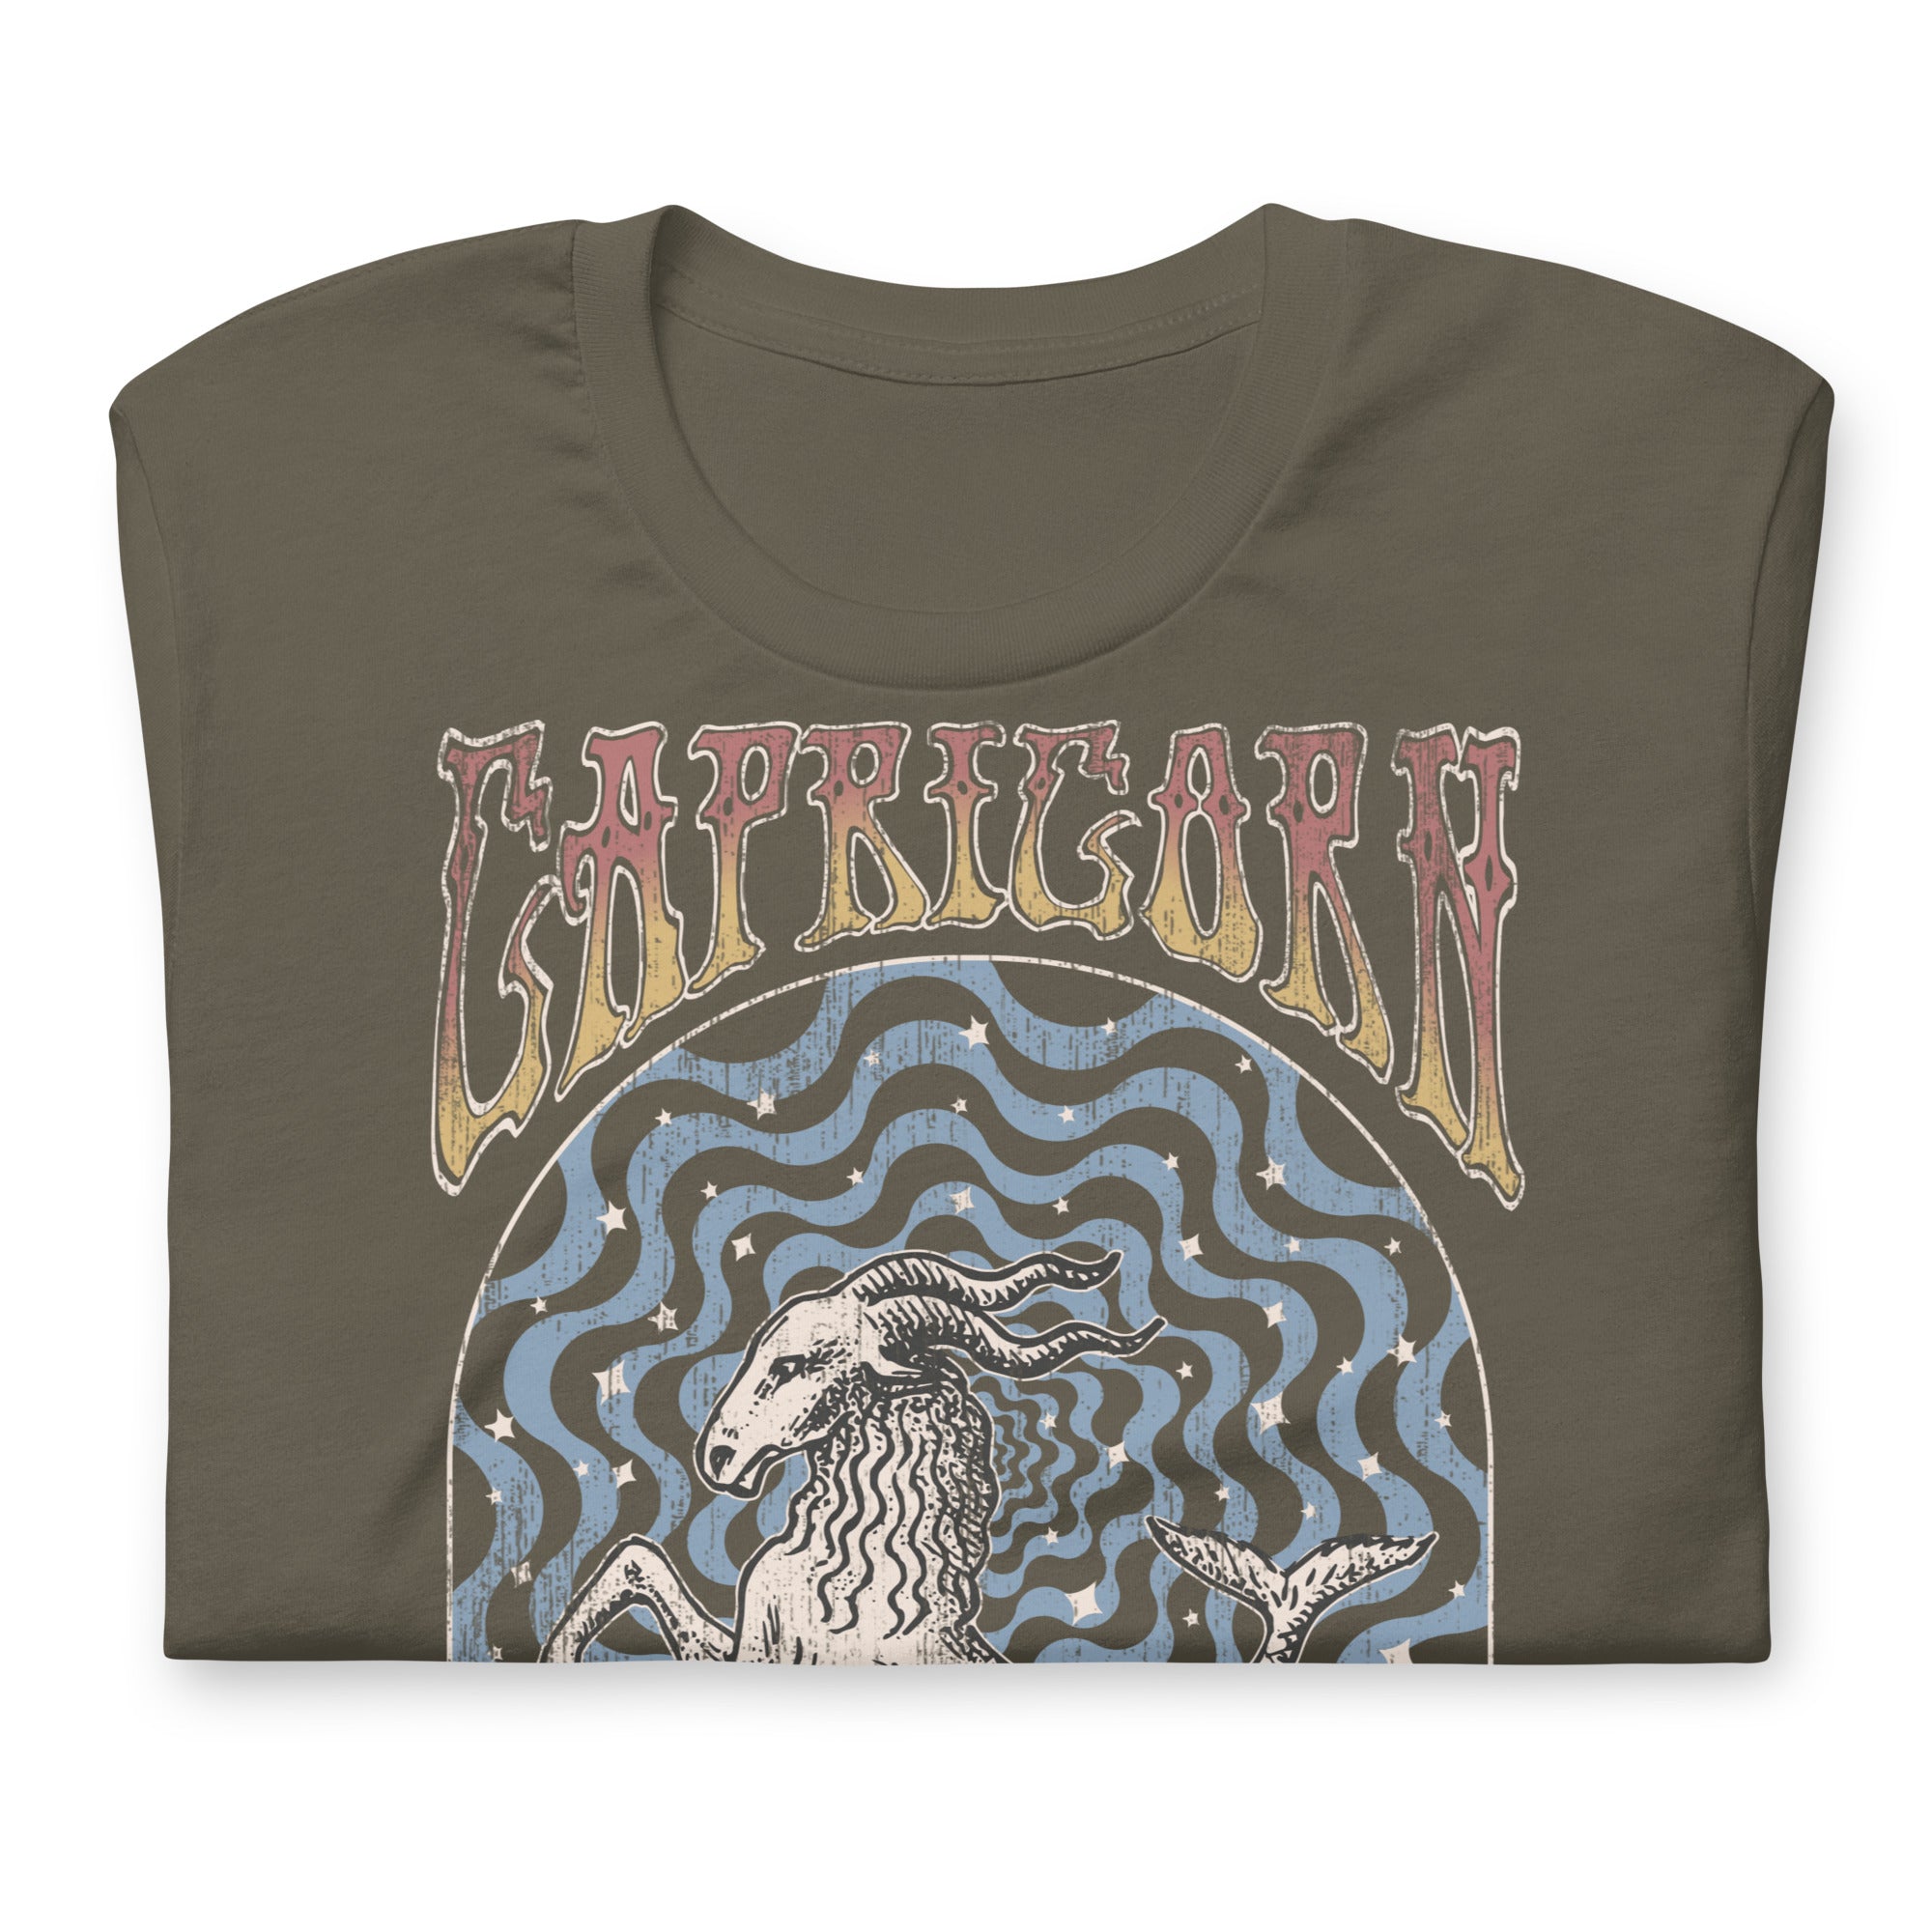 Capricorn Band T-Shirt Inspired Graphic Tee